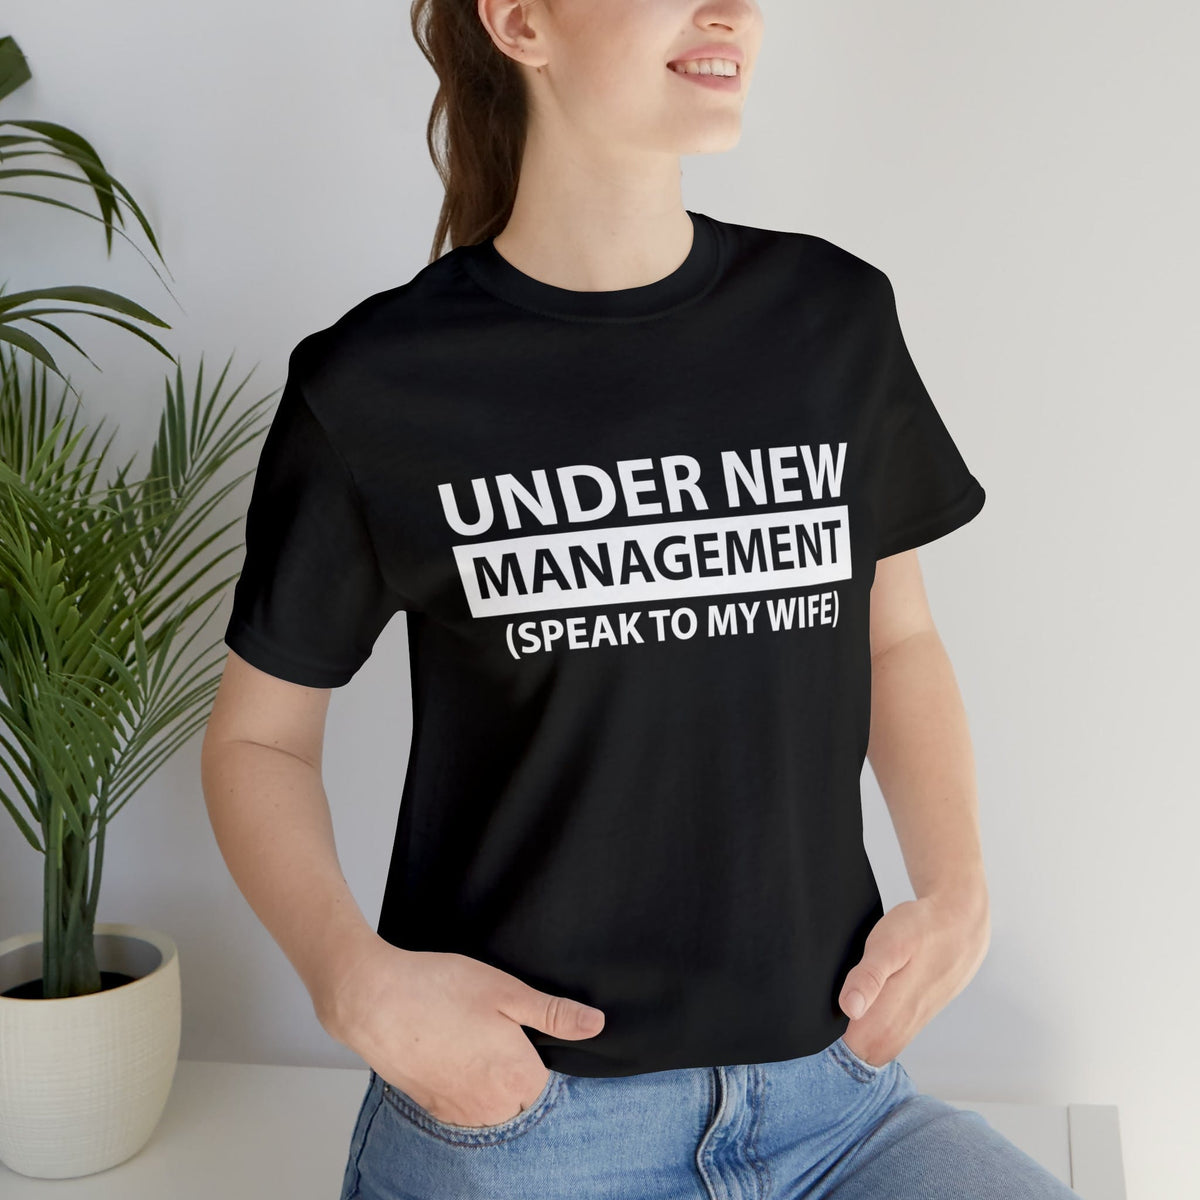 Under New Management (speak to my wife)